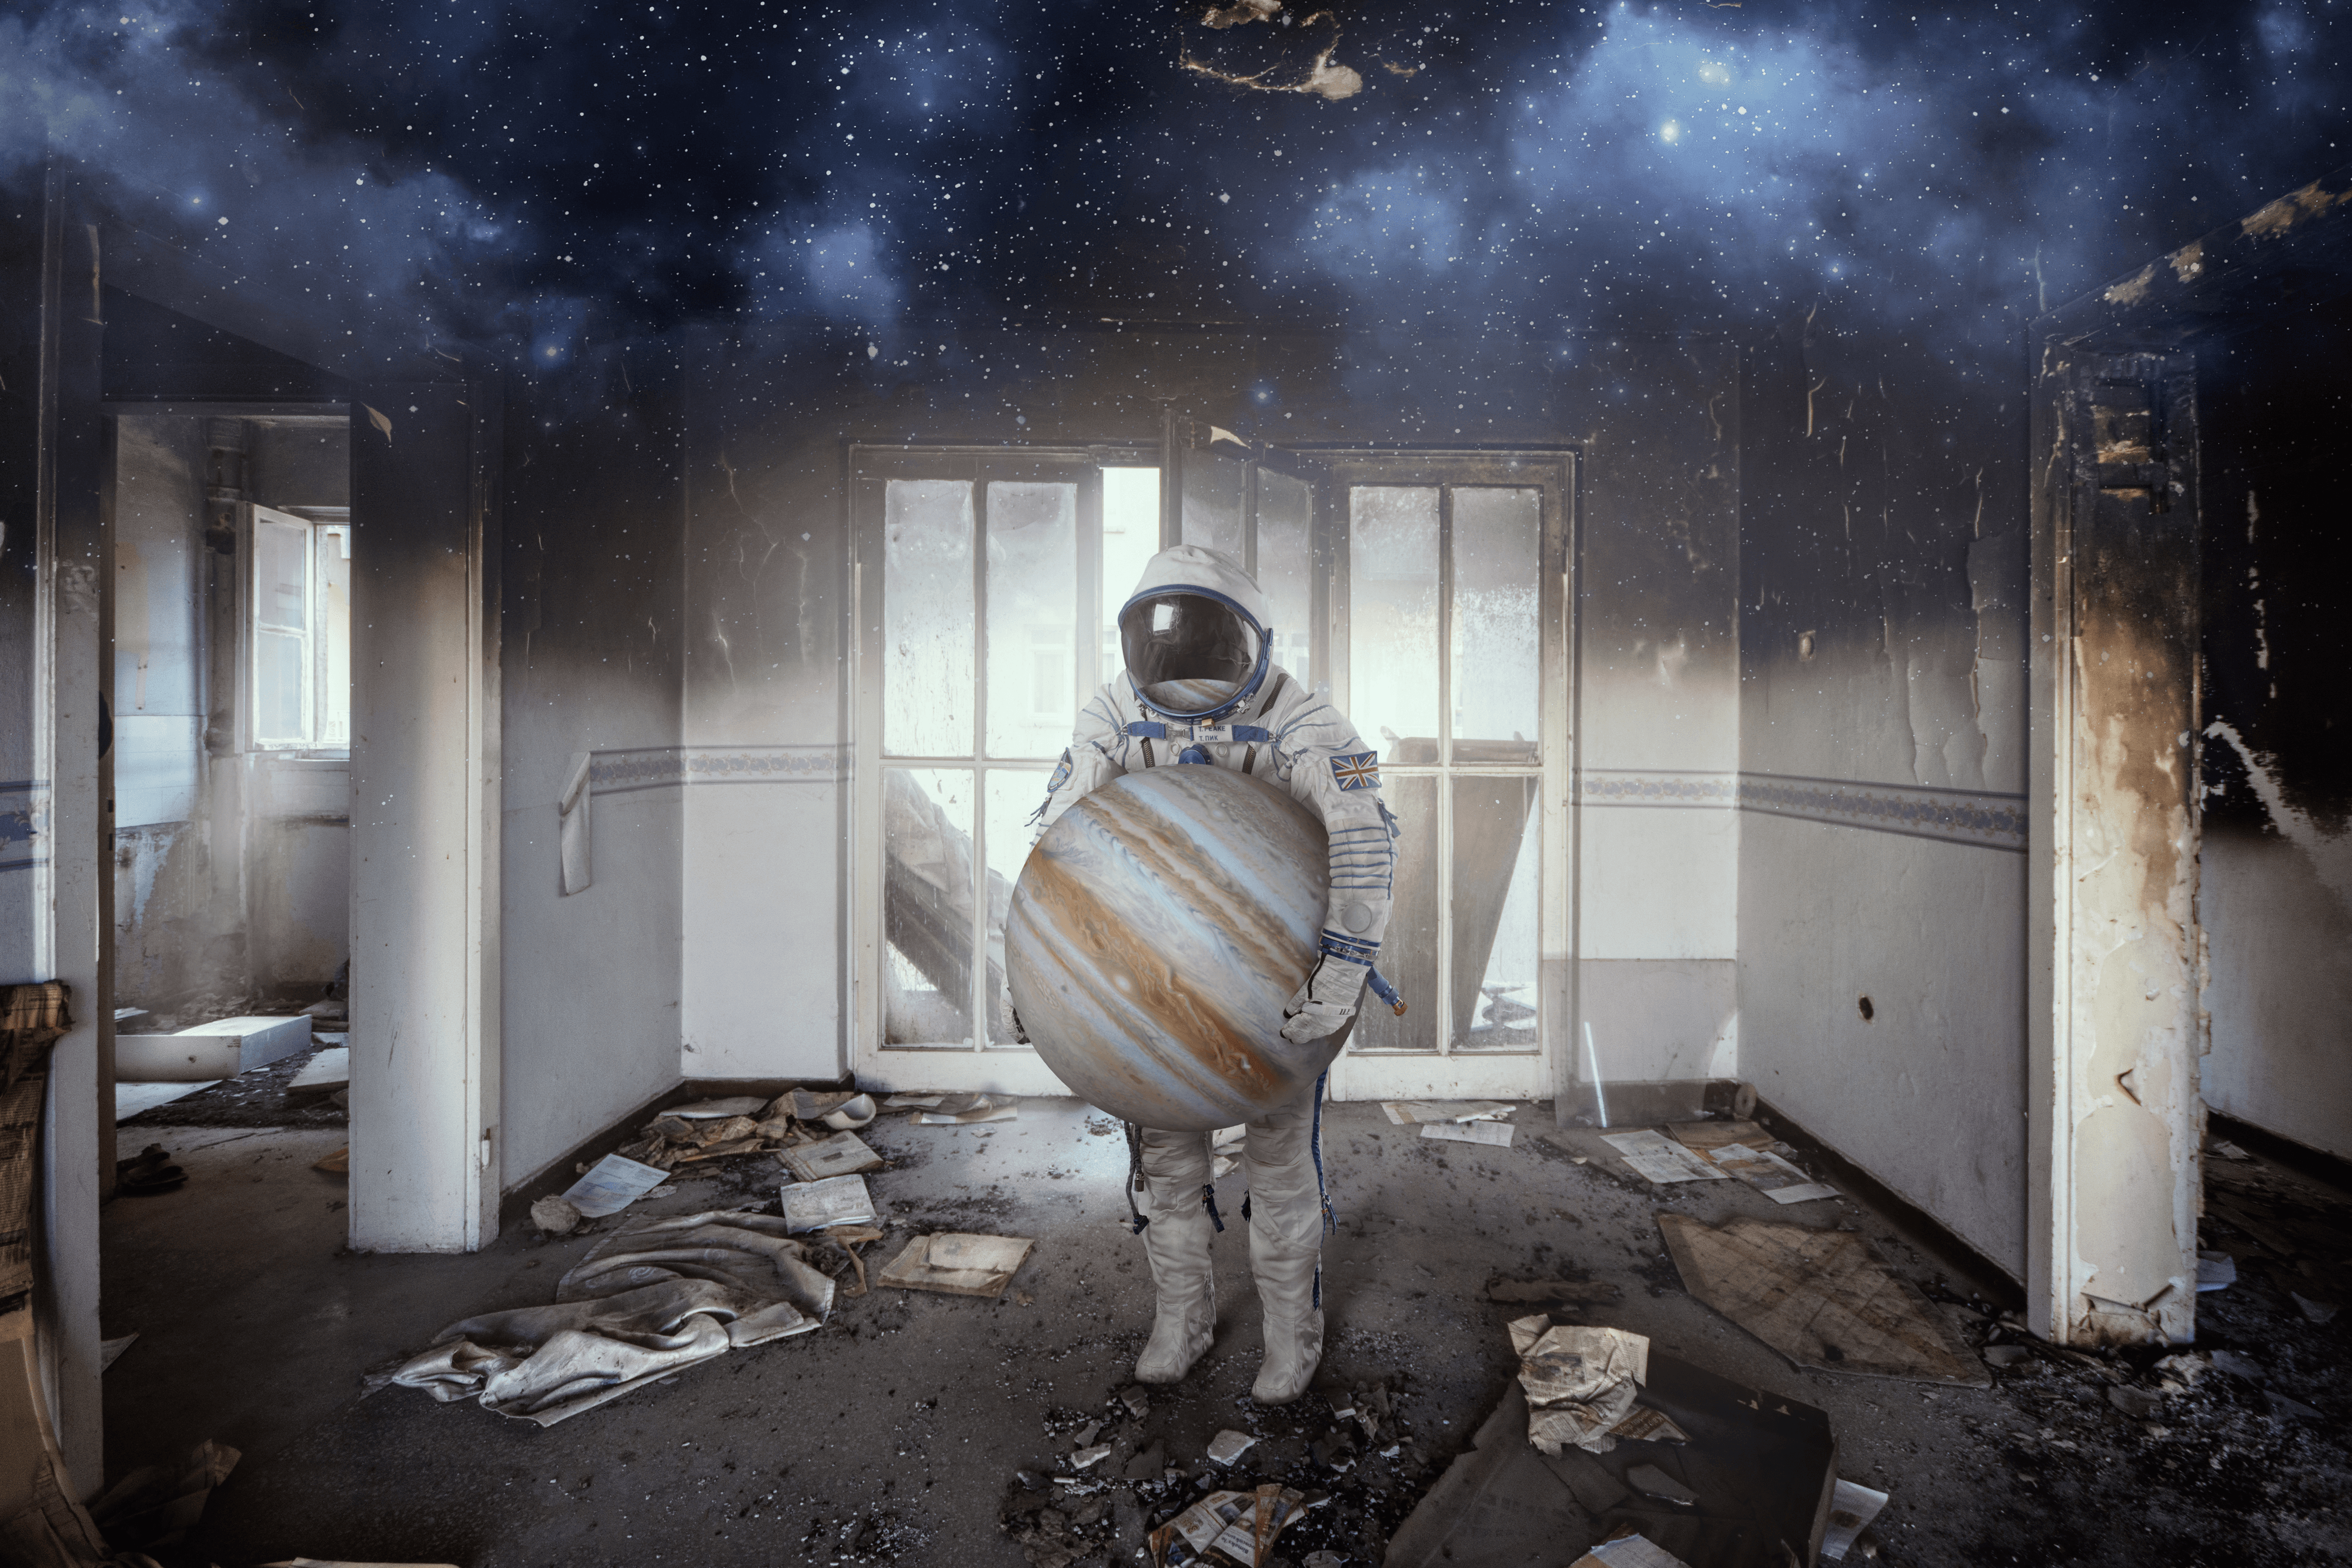 Lost Astronaut by Ozkan Durakoglu